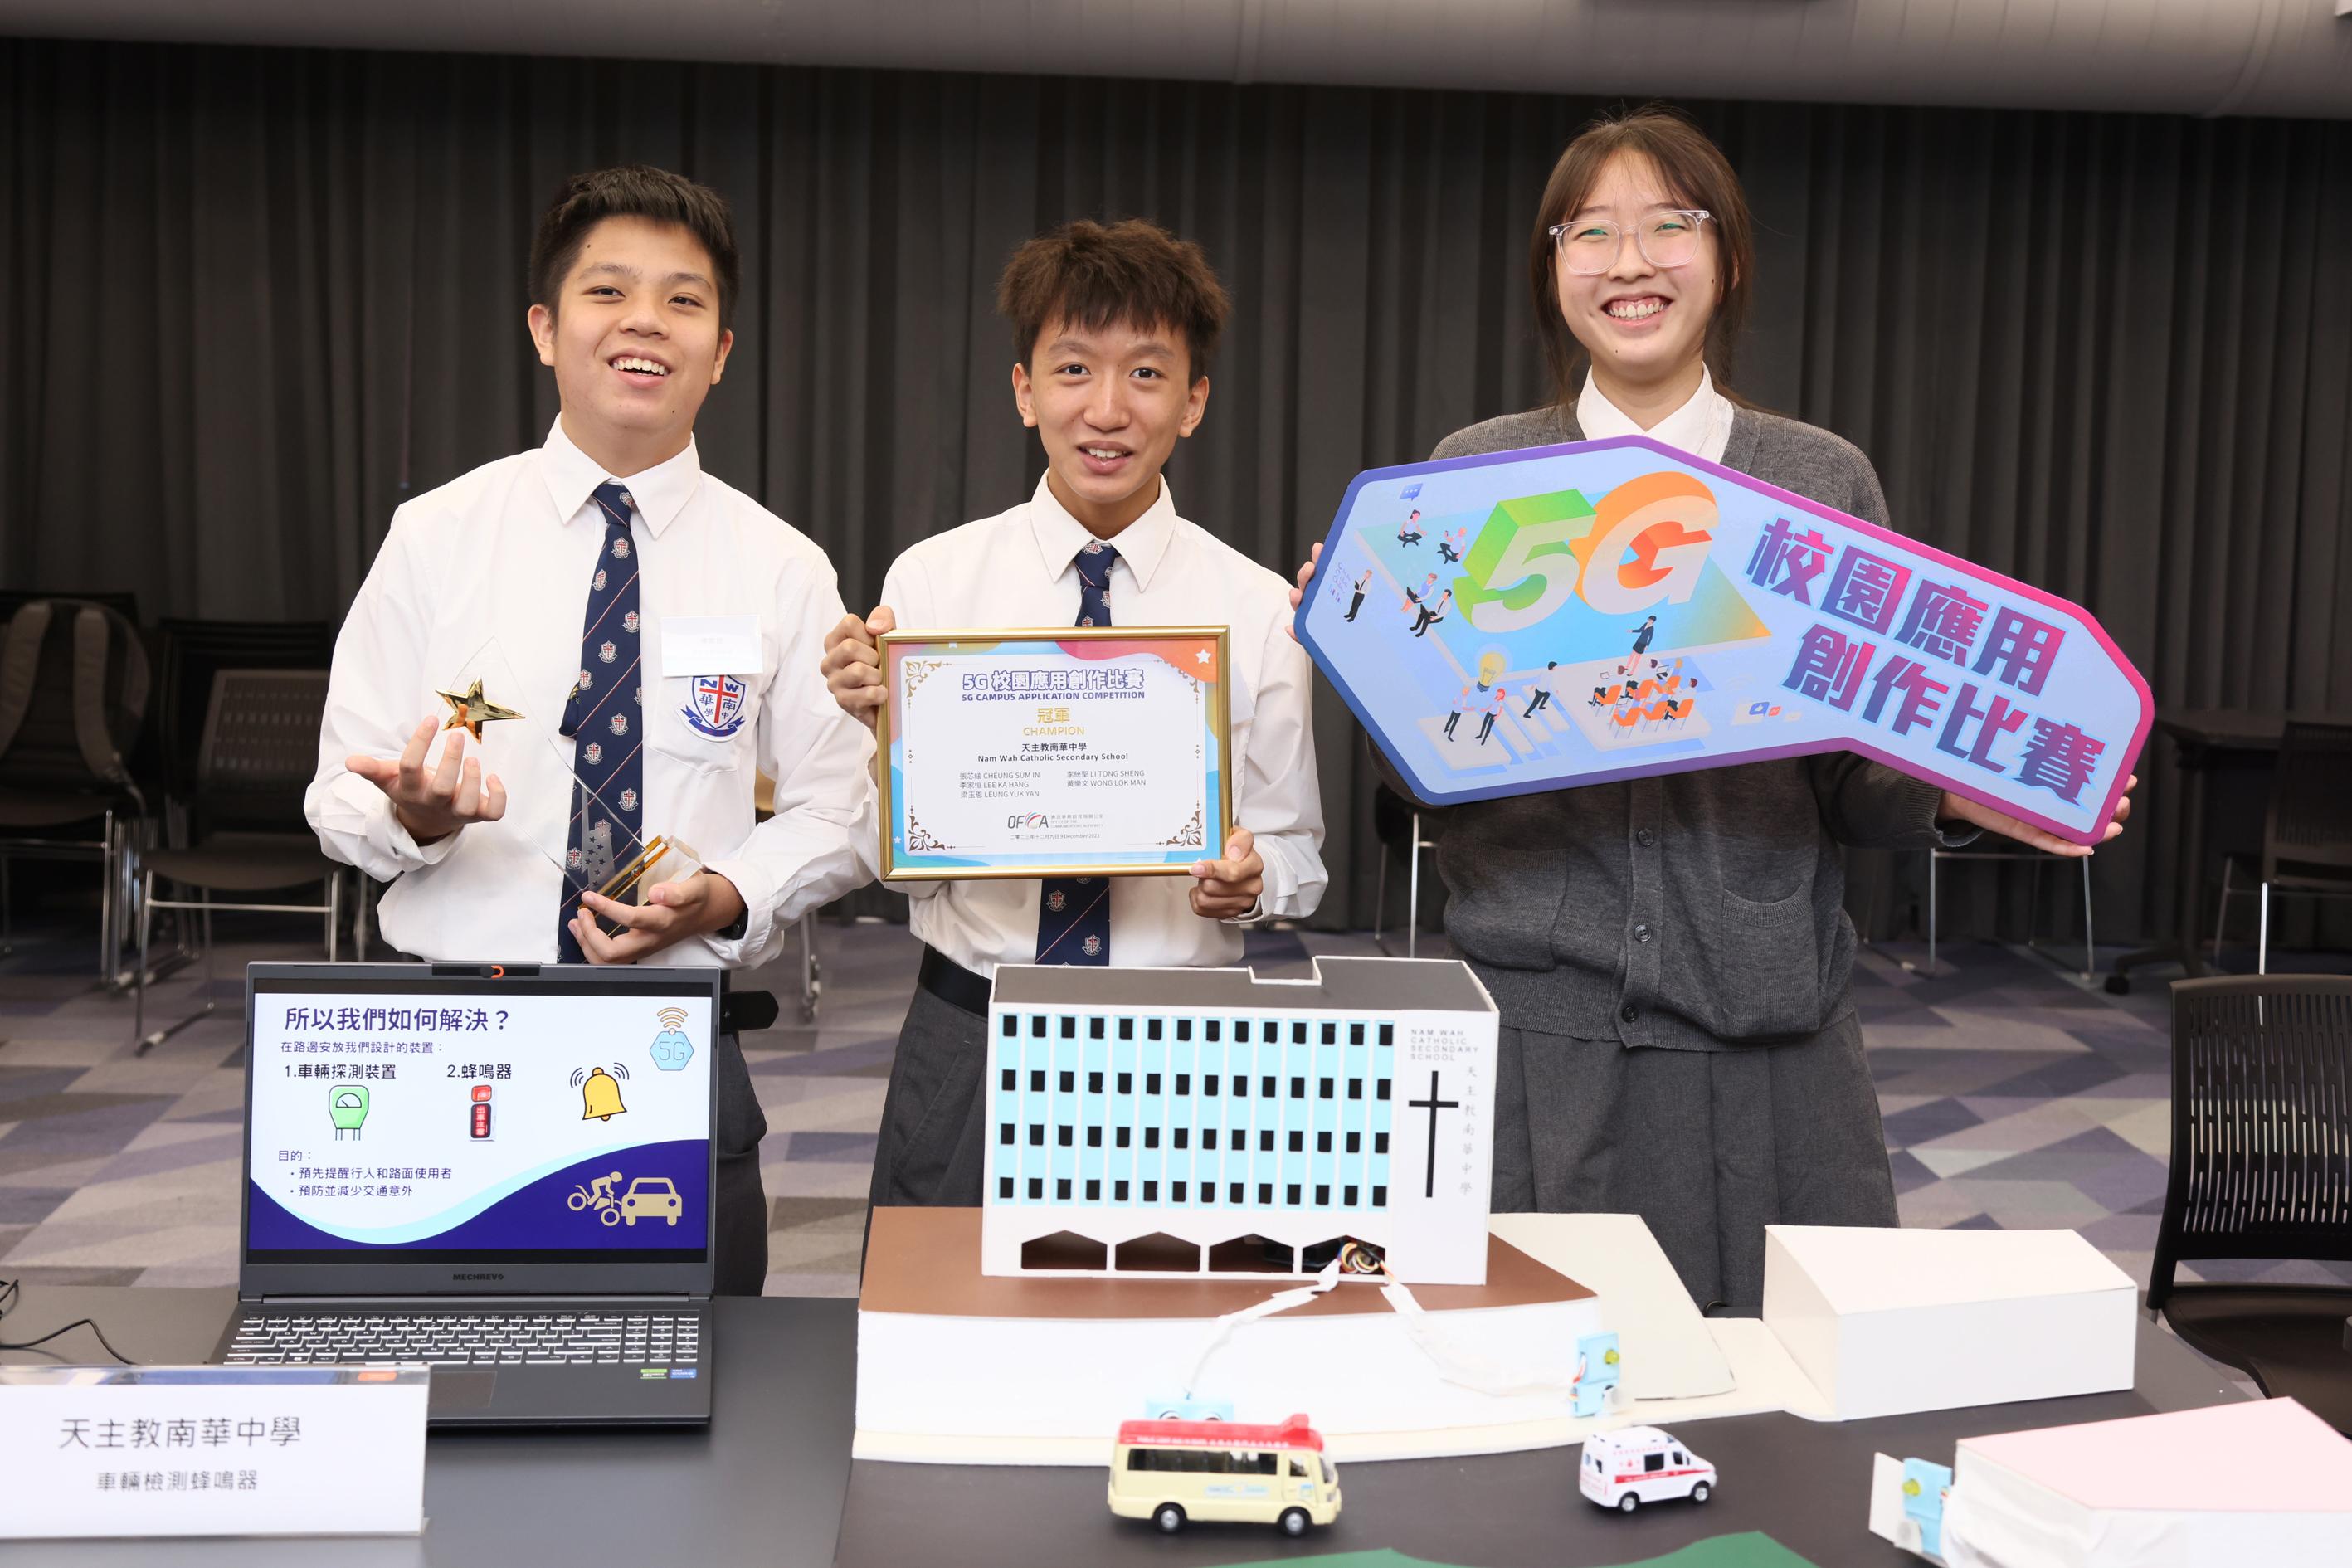 通訊事務管理局辦公室今日（十二月九日）舉行「5G校園應用創作比賽」頒獎典禮。圖示冠軍得獎者，來自天主教南華中學的隊伍及其作品「車輛檢測蜂鳴器」。